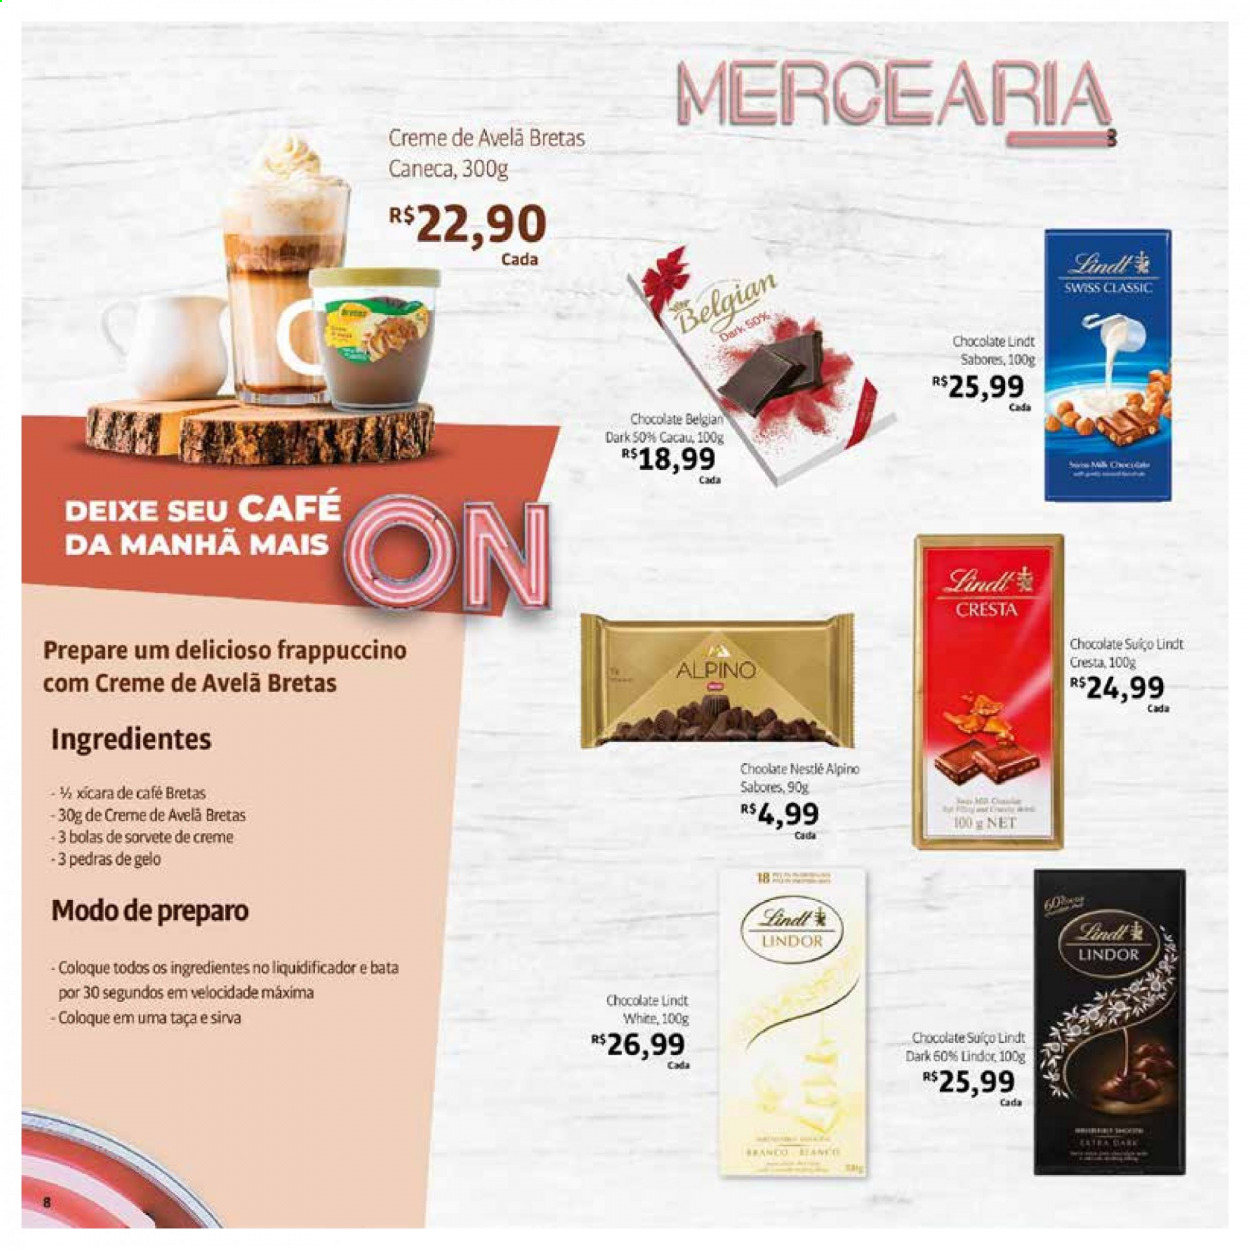 thumbnail - Folheto Bretas - 01/05/2021 - 31/05/2021 - Produtos em promoção - chocolate, Nestlé, Lindor, cacau, crema de avelã, taça, caneca, liquidificador. Página 8.